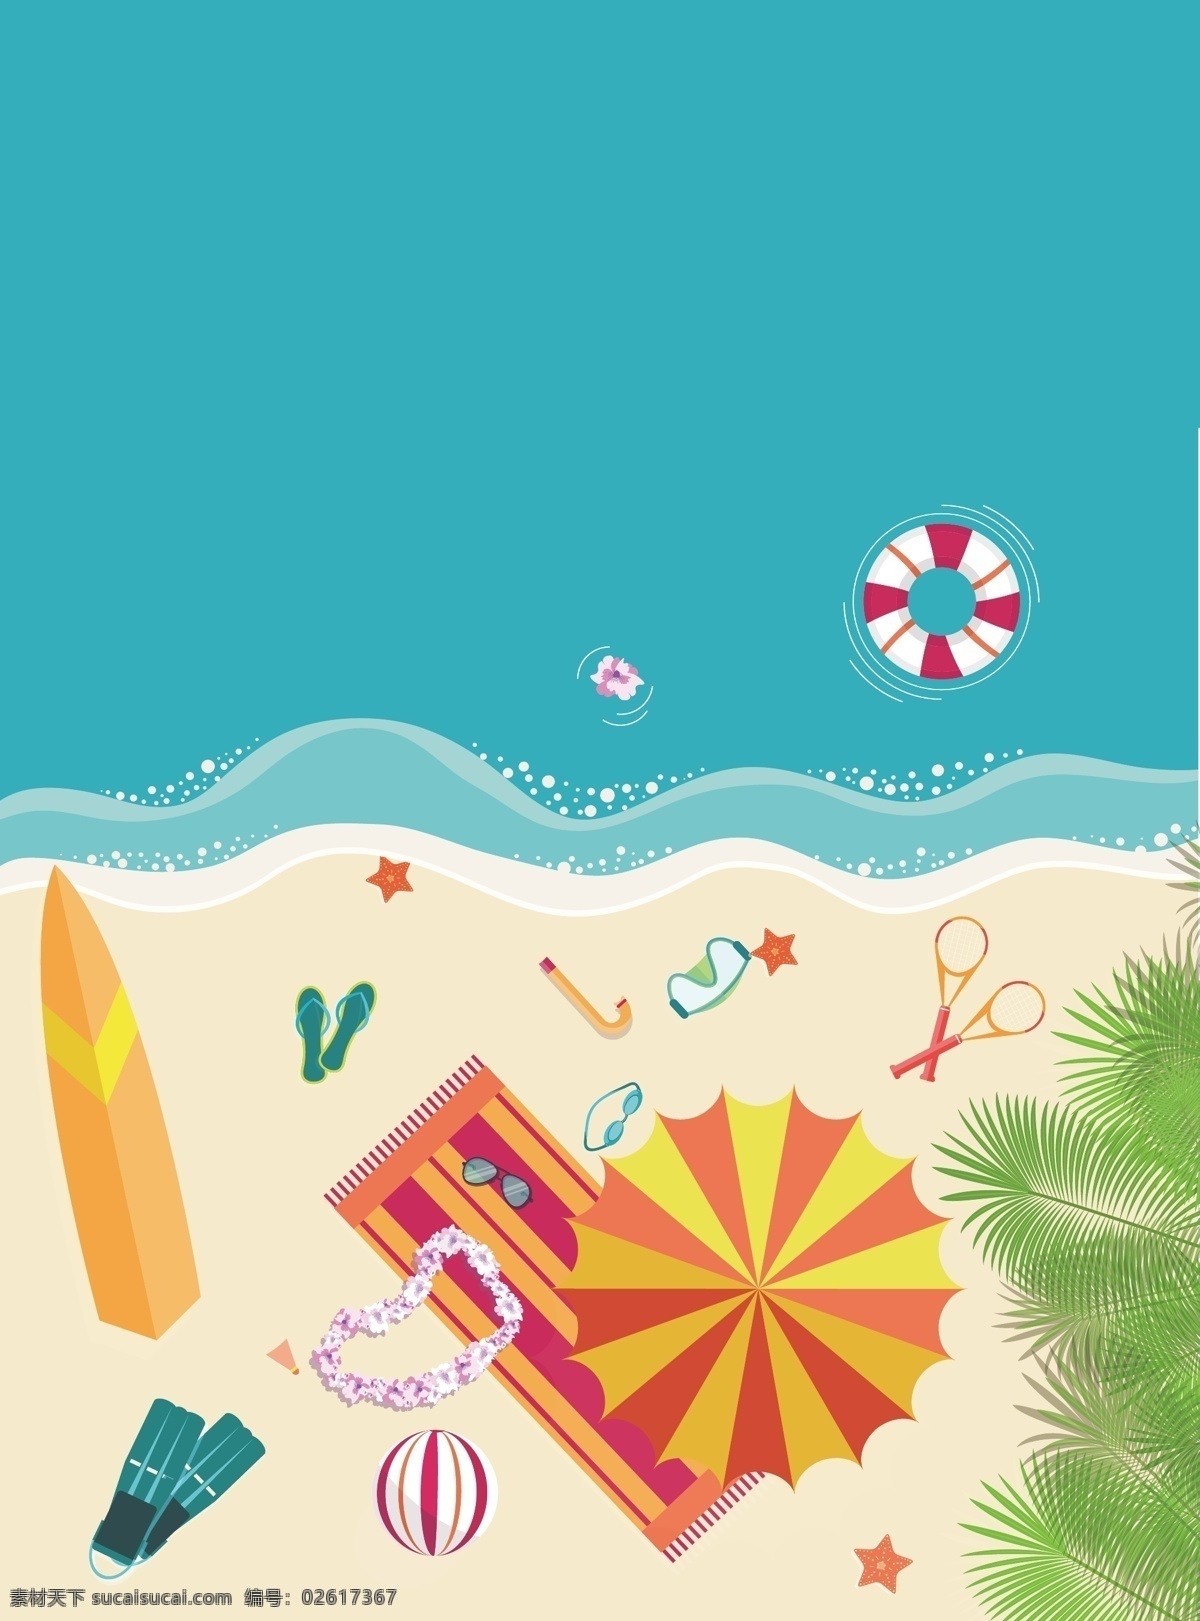 矢量 海洋 度假旅游 背景 卡通 夏日 大海 沙滩 度假 旅游 蓝色 童趣 手绘